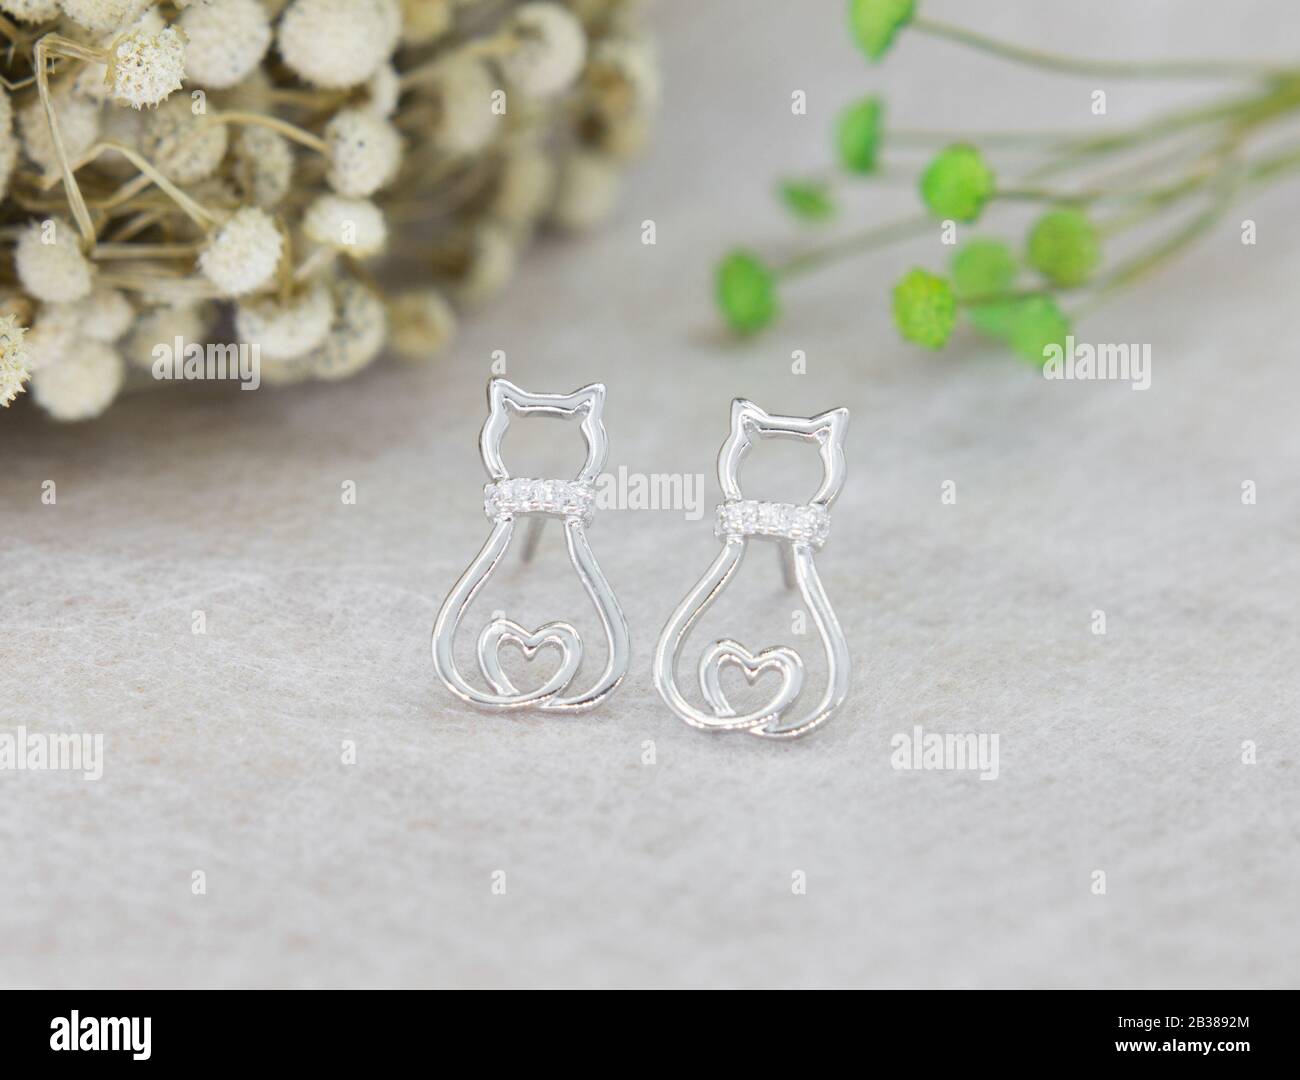 Une paire de superbes boucles d'oreilles en argent 925 en forme de chat décorées de diamant sur fond gris Banque D'Images